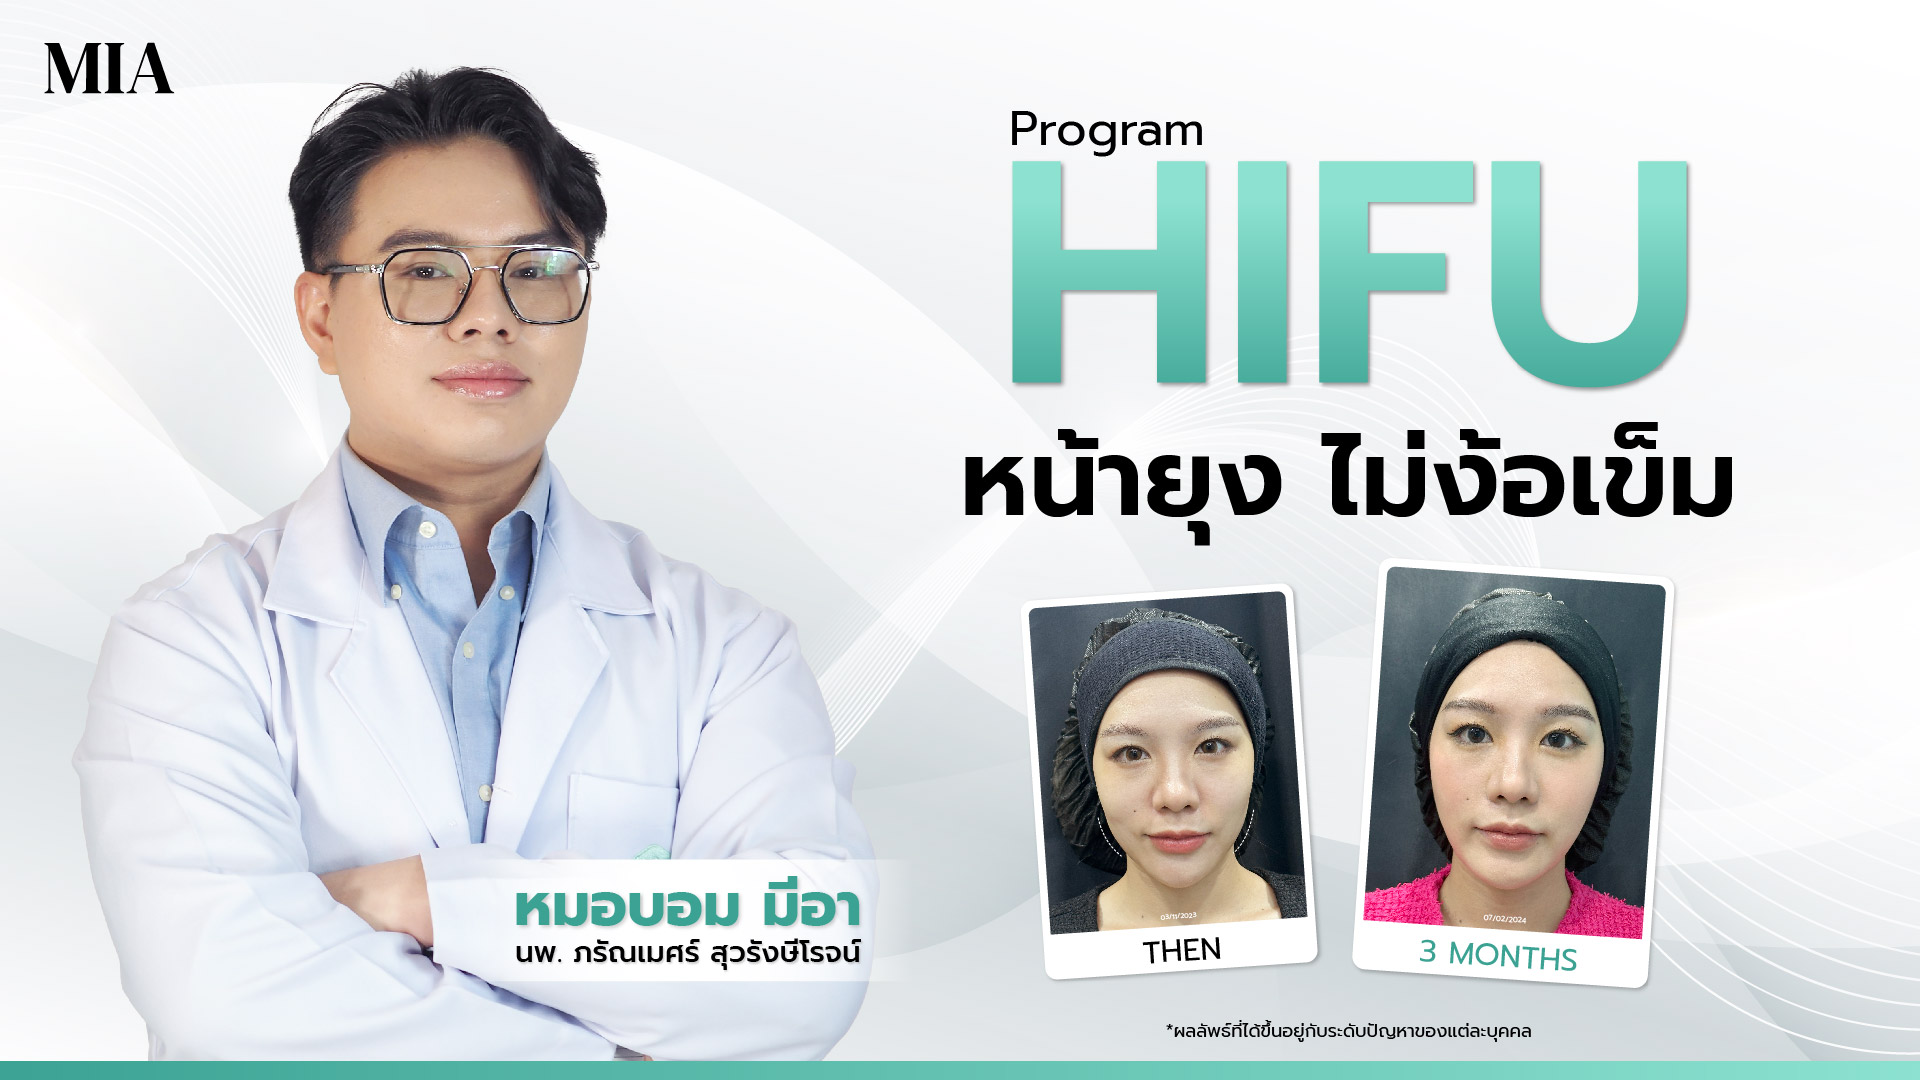 หมอบอม มีอา แพทย์ผู้ชำนาญการด้านการผิว และภาพเปรียบเทียบก่อน-หลังทำ Hifu ของผู้หญิง